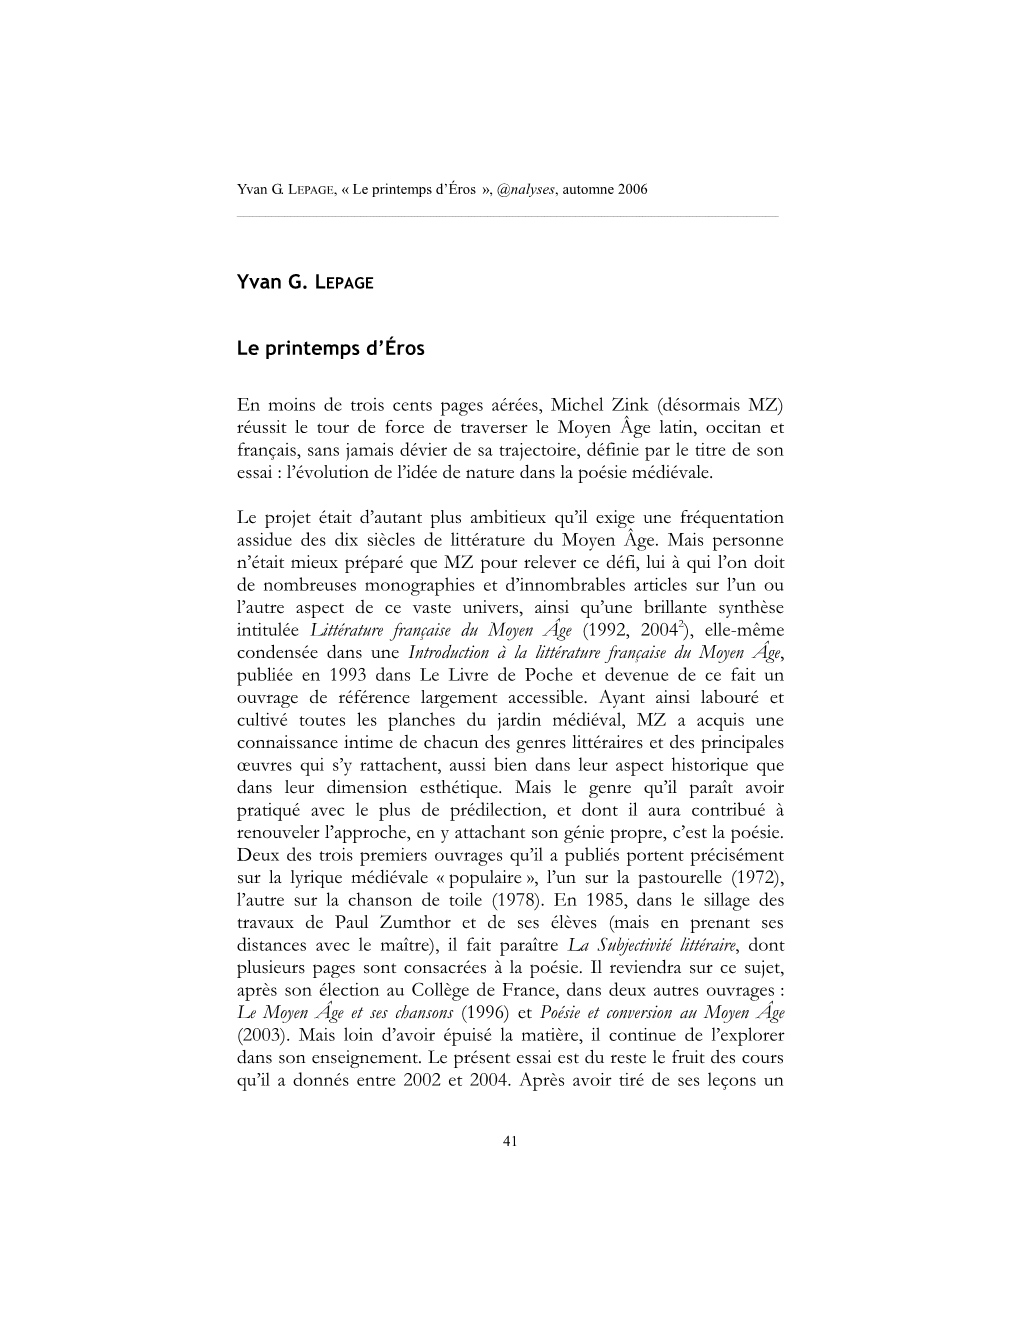 Yvan G. LEPAGE Le Printemps D'éros En Moins De Trois Cents Pages